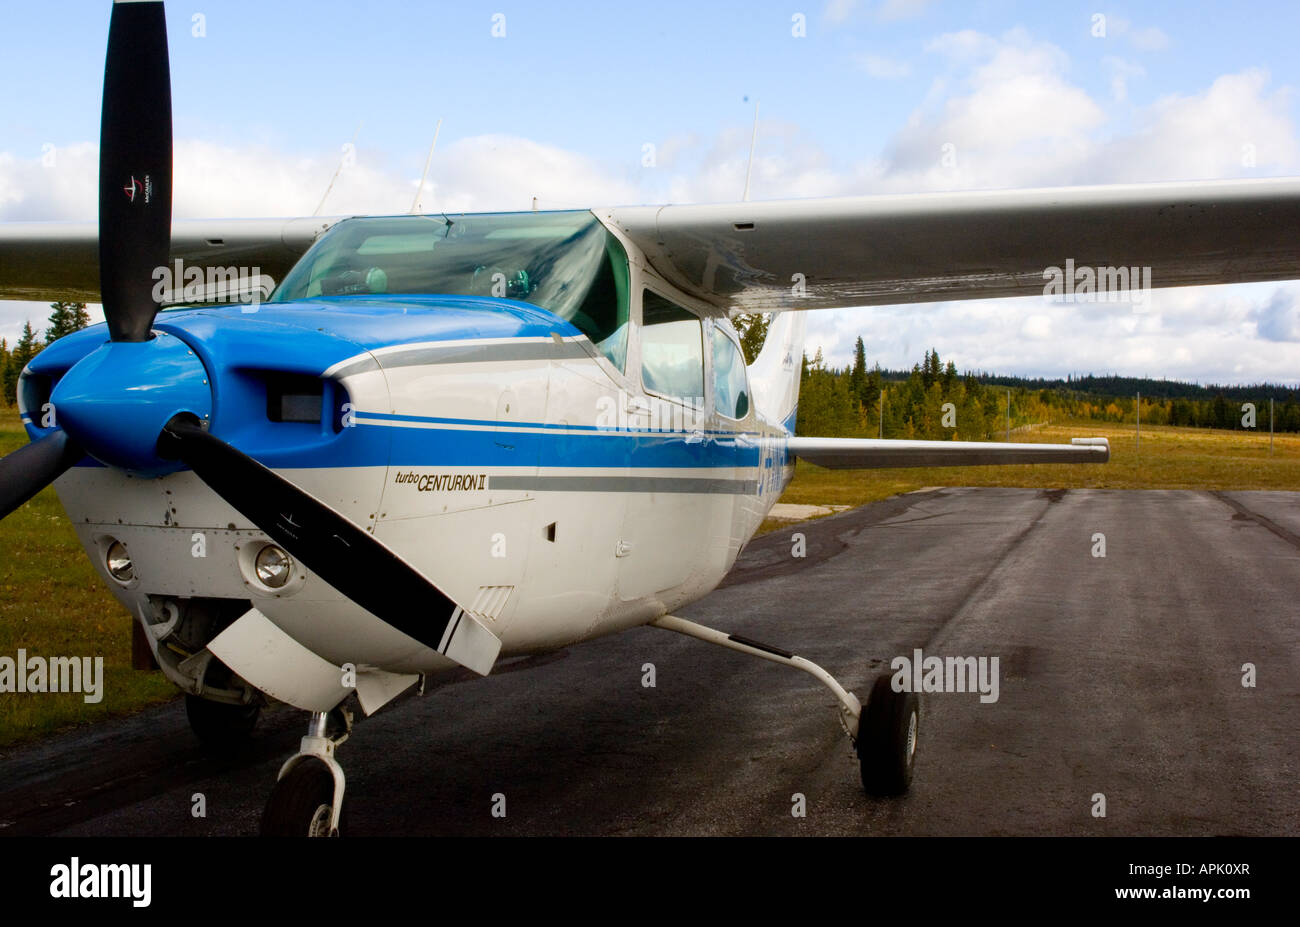 A Cesna aircraft Stock Photo